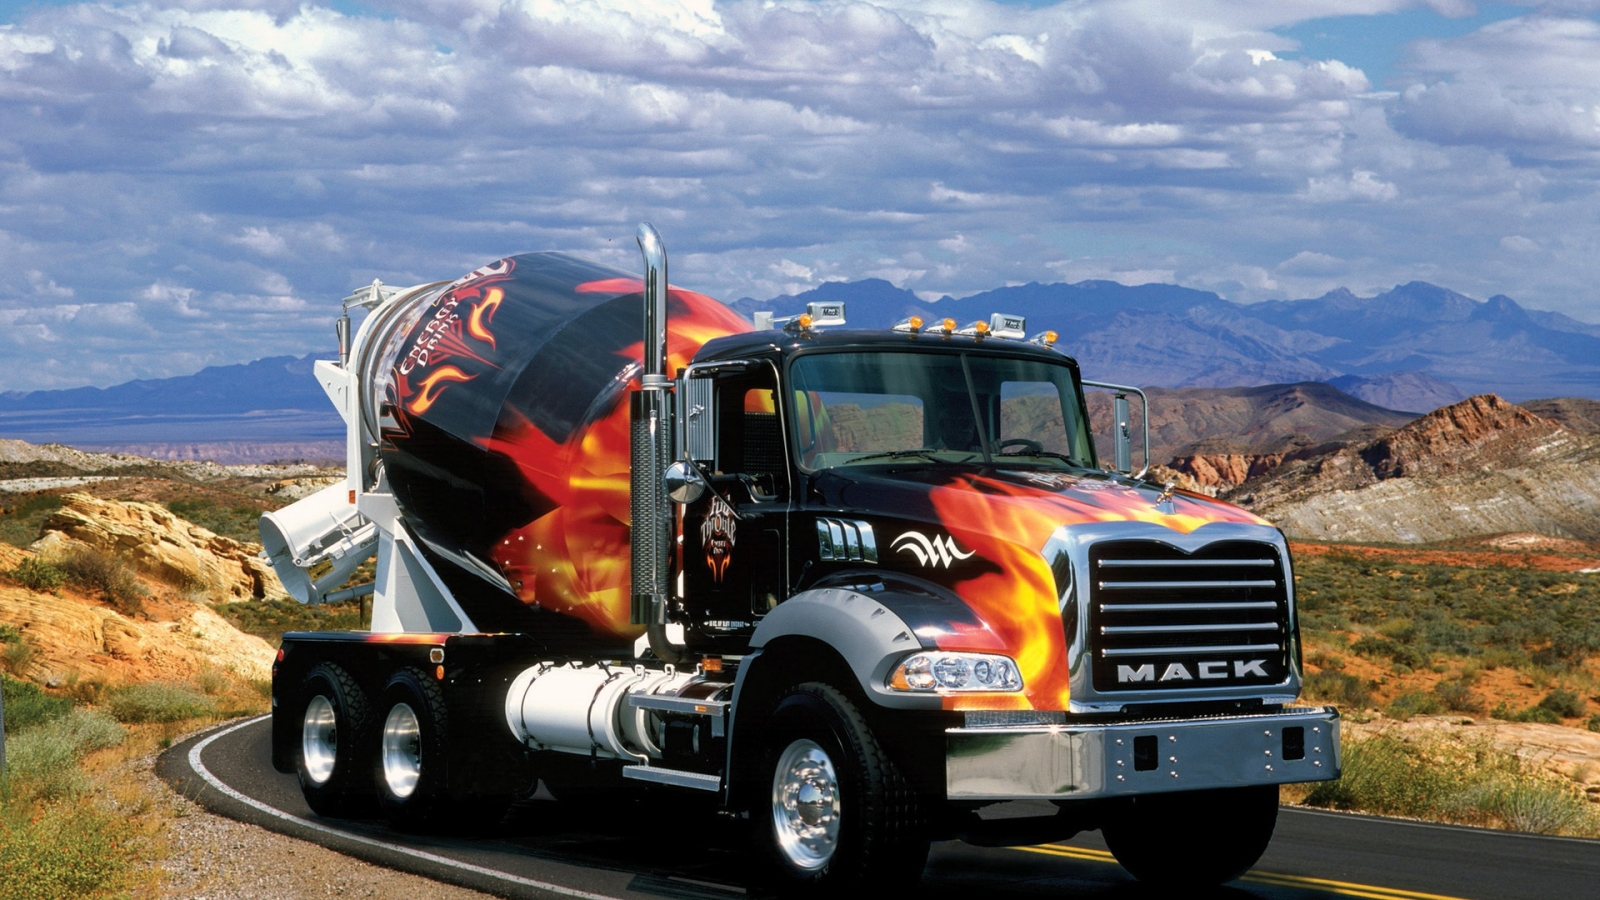 MACK Truck for 1600 x 900 HDTV resolution